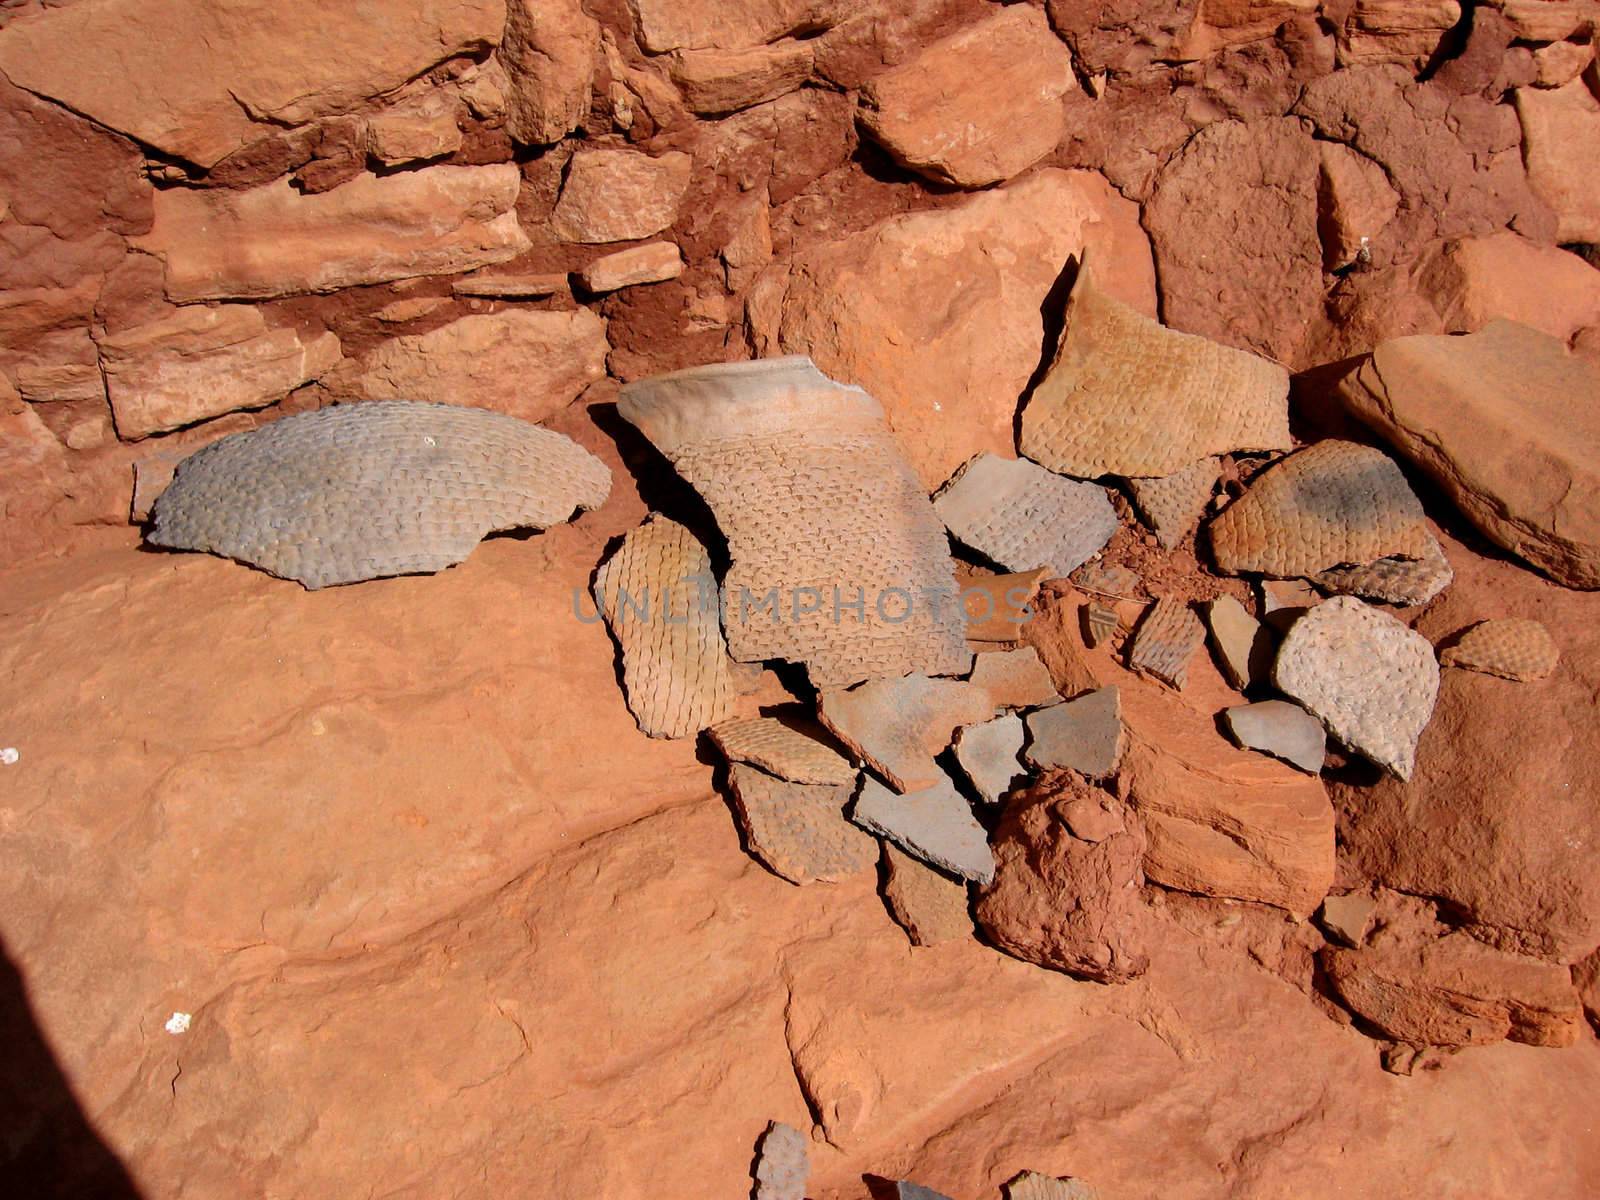 Finding of historic Anasazi pottery sherds (basketmaker style) in the desert of Utah, USA.